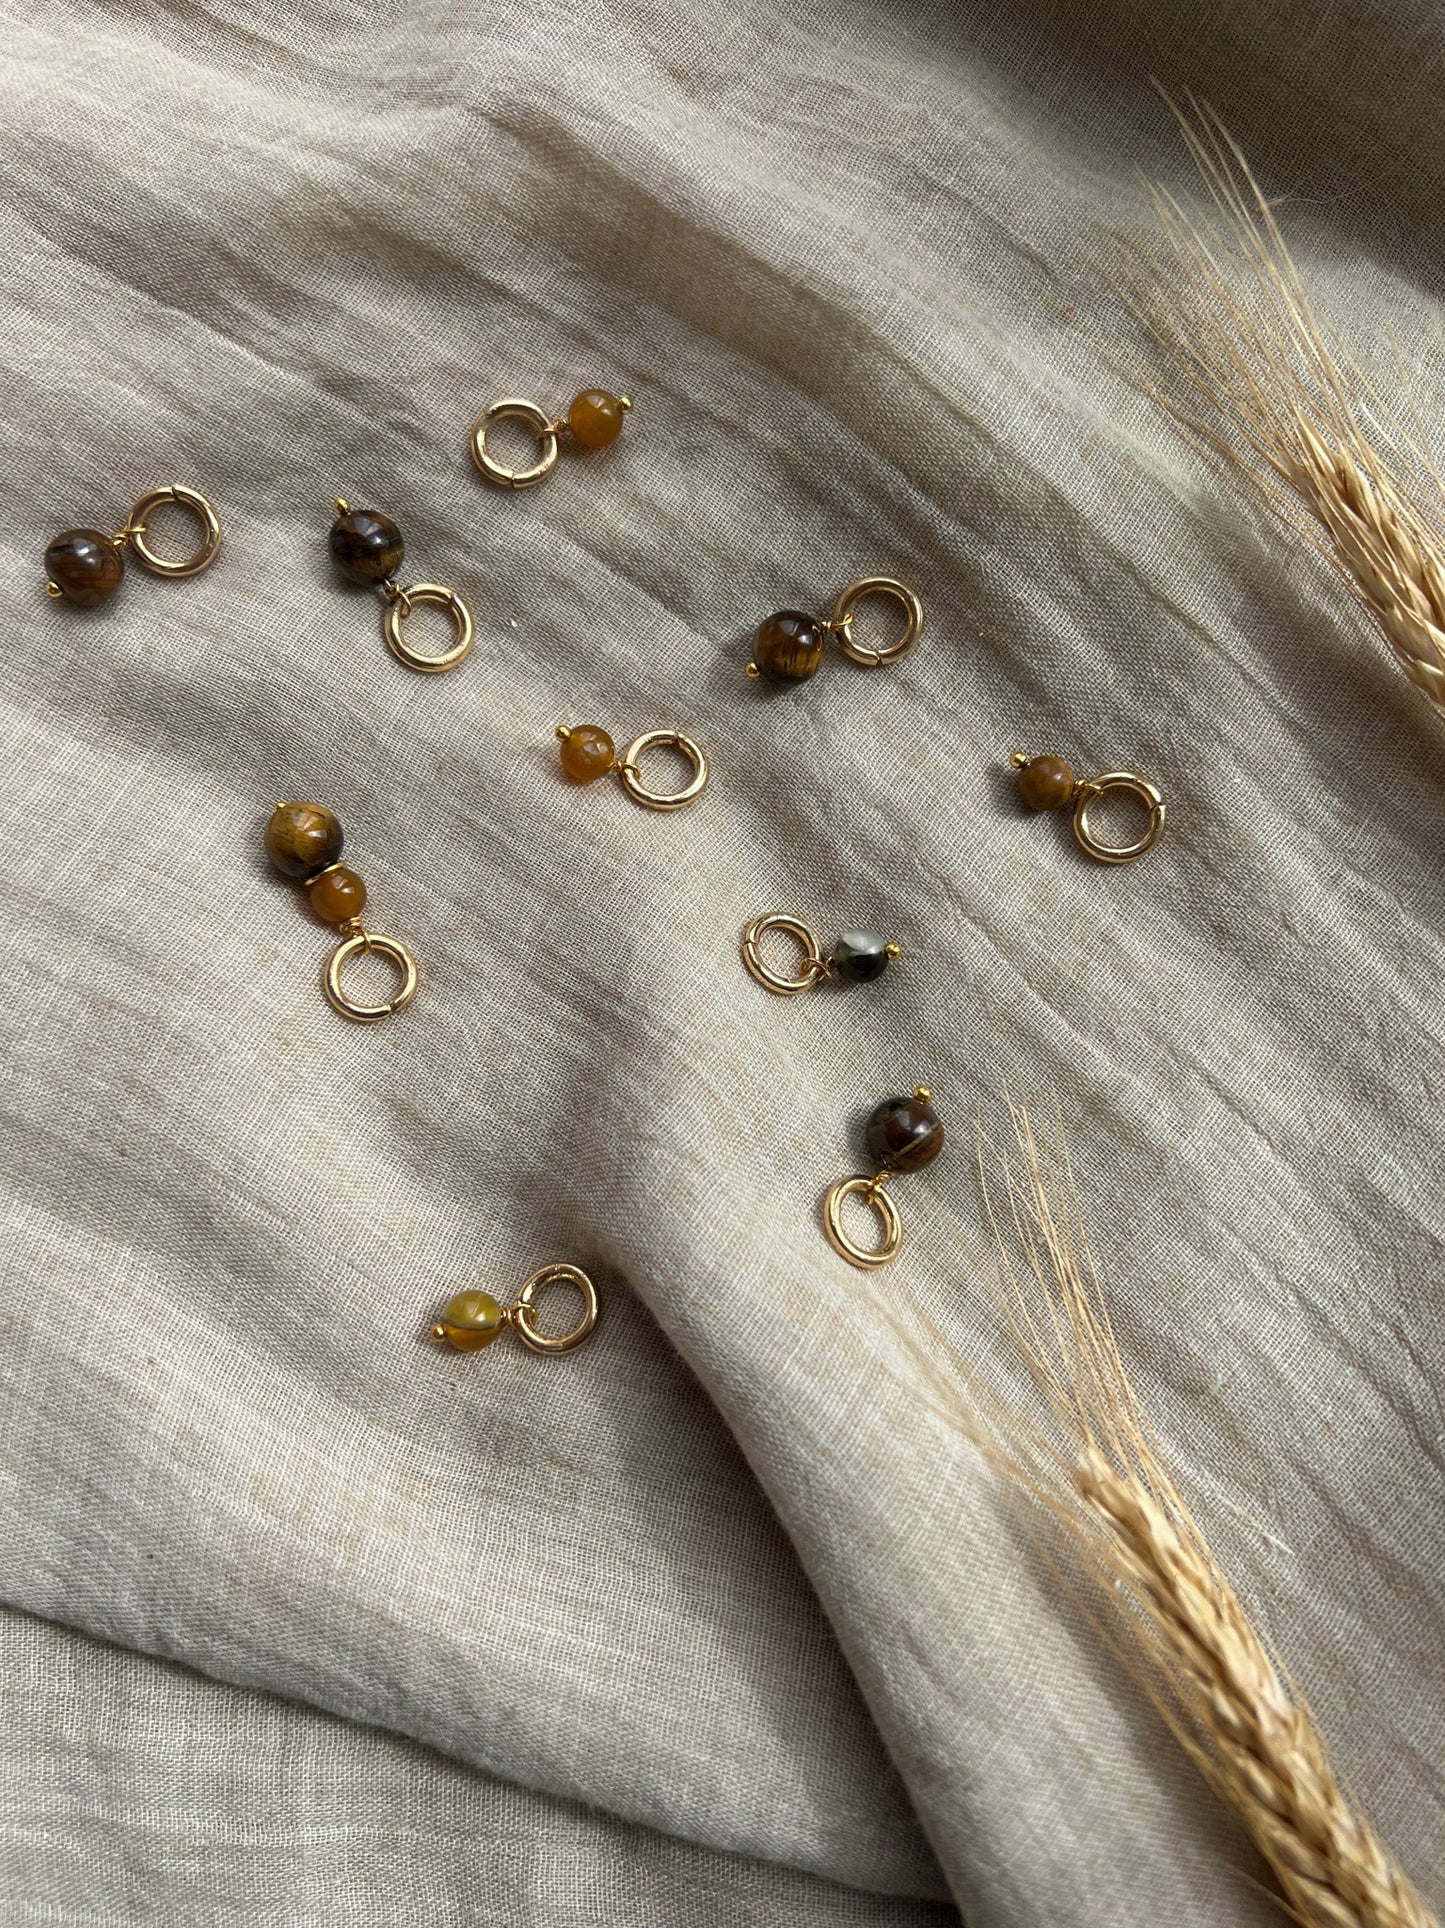 Maskemarkører med perler i mange fine brune nuancer og forgyldte ringe